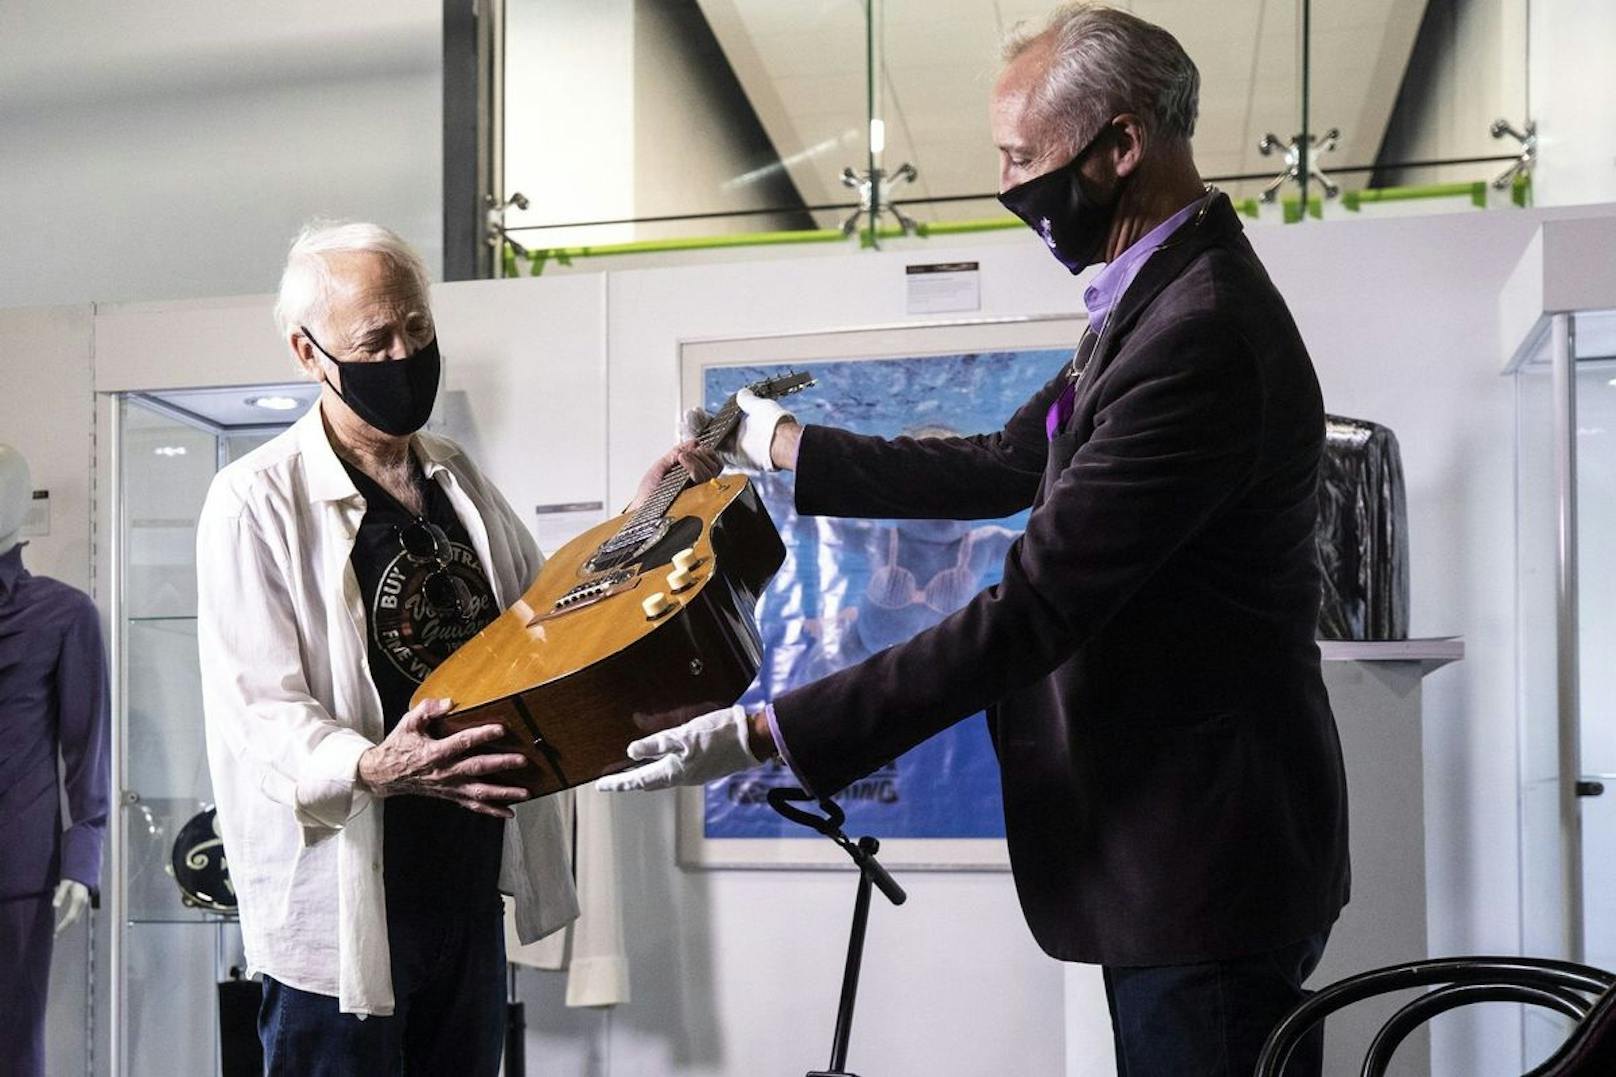 Das Instrument erzielte bei der Auktion die Rekordsumme von sechs Millionen Dollar.